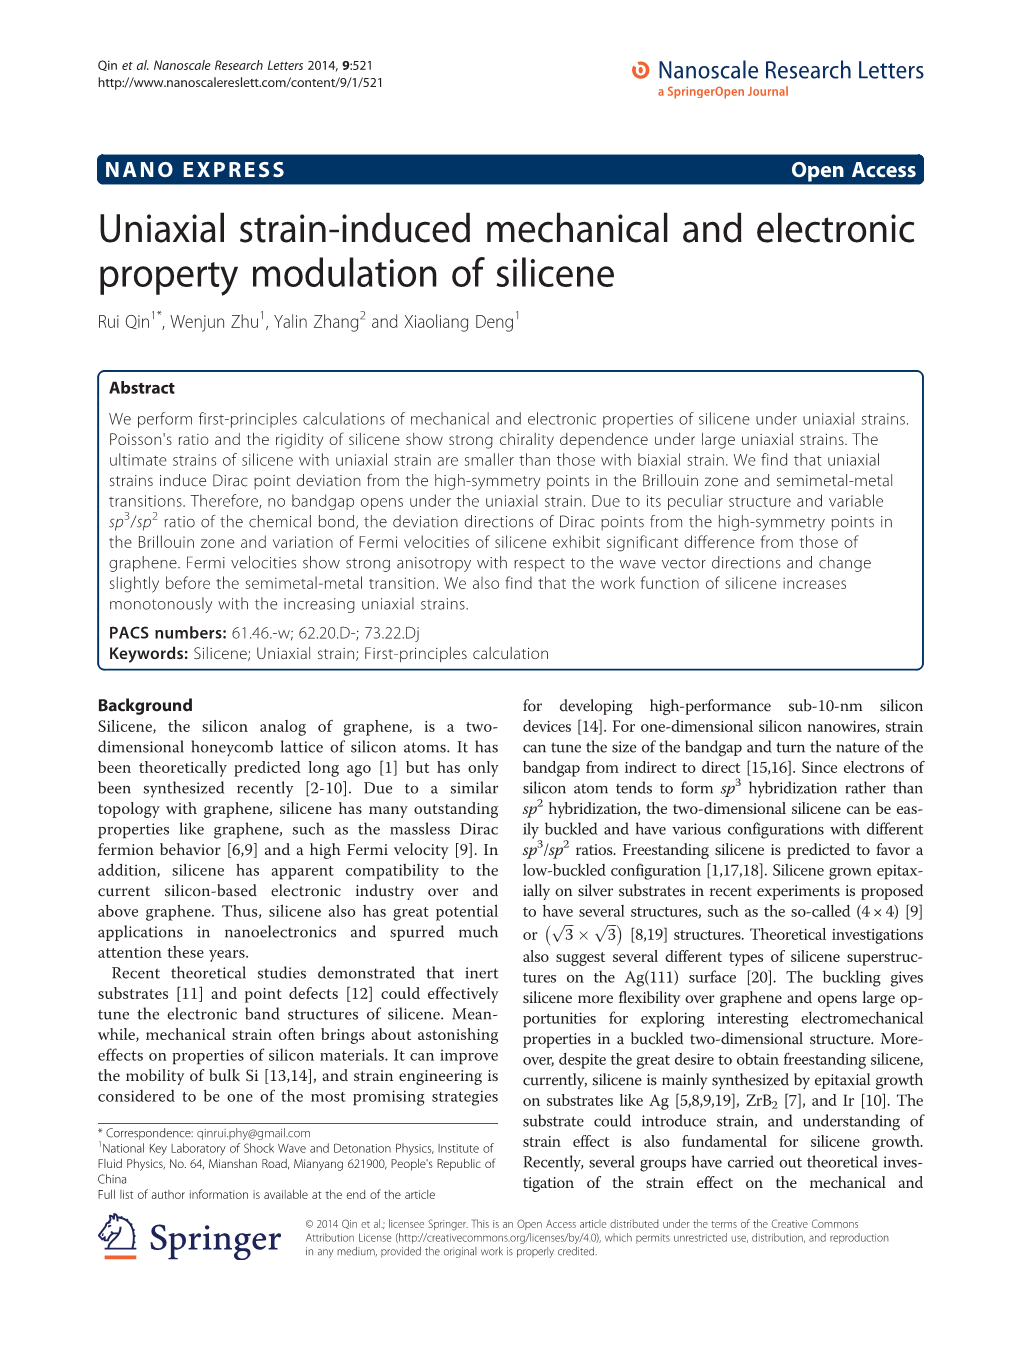 Uniaxial Strain-Induced Mechanical and Electronic Property Modulation of Silicene Rui Qin1*, Wenjun Zhu1, Yalin Zhang2 and Xiaoliang Deng1